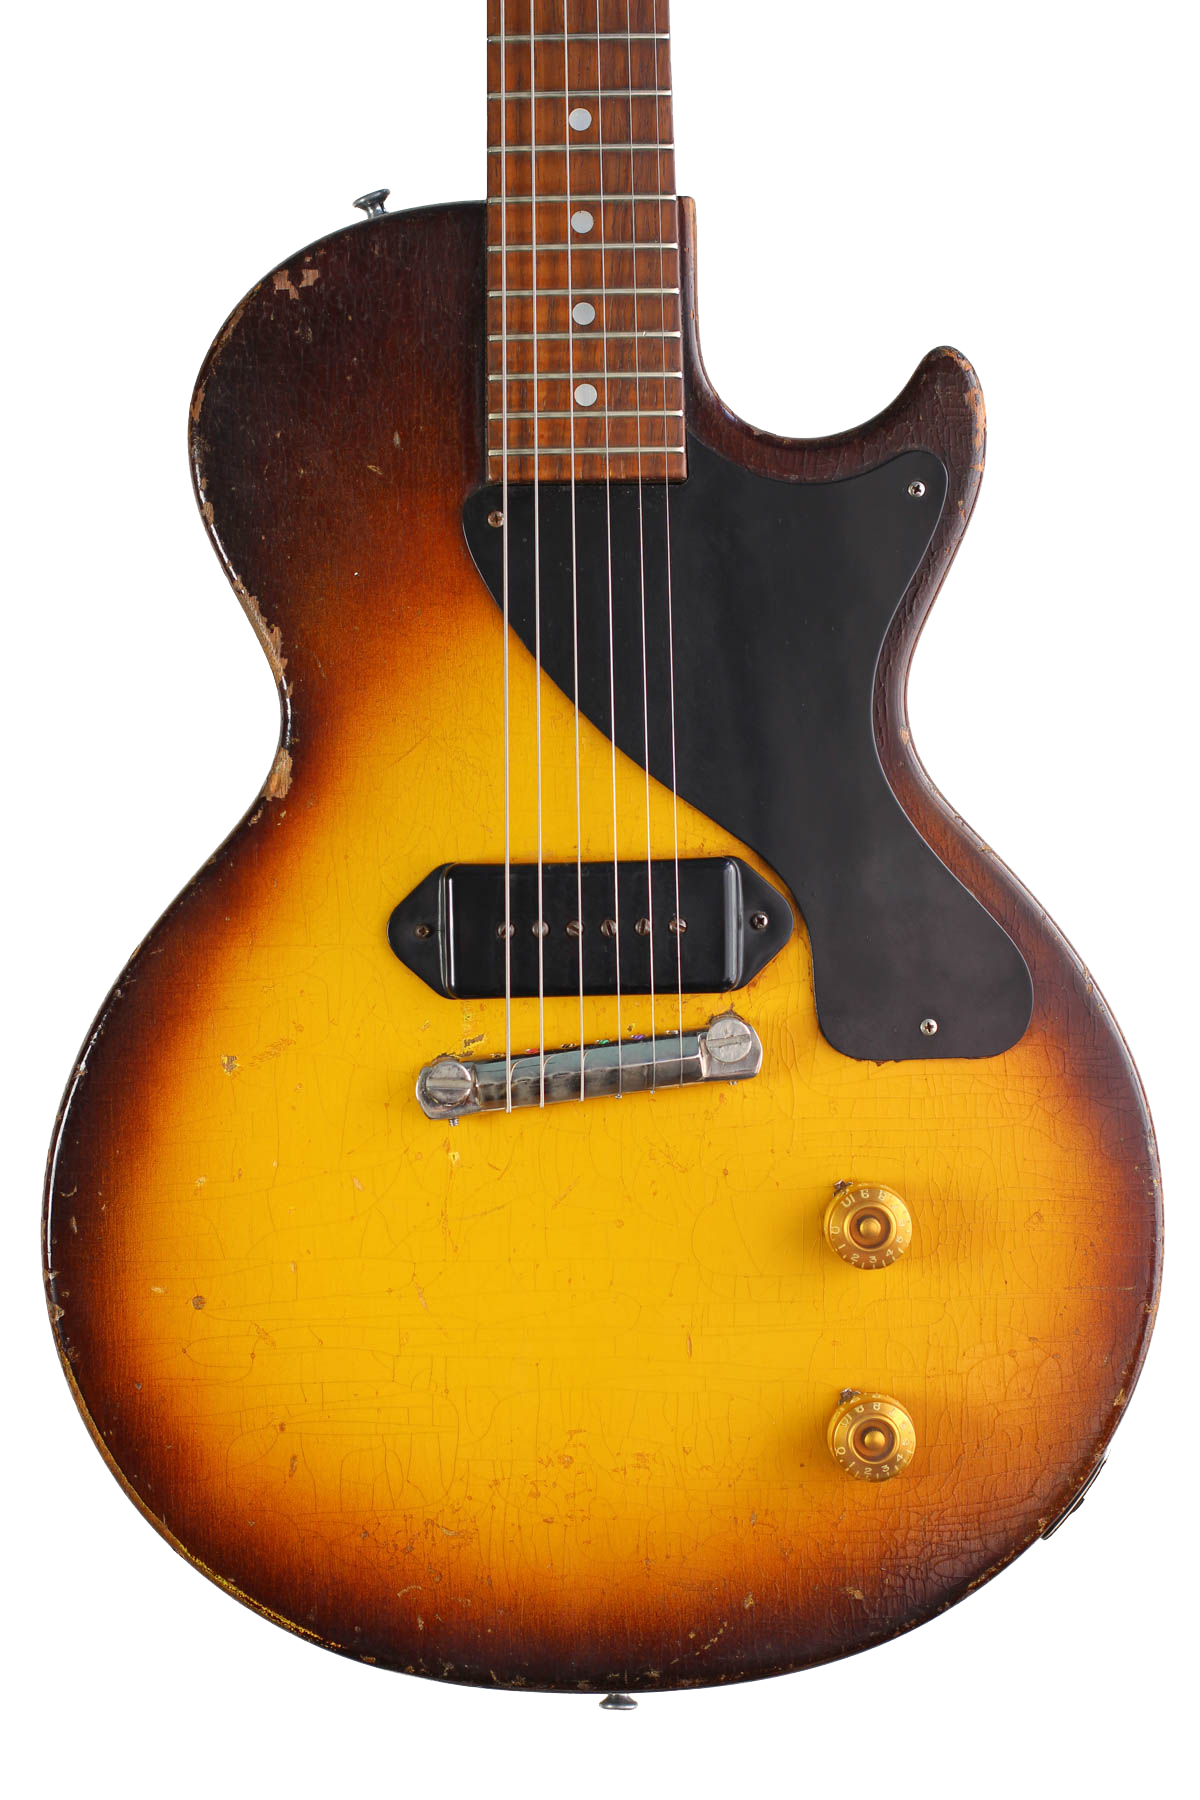 1955 Gibson Les Paul Jr. - Vintage Guitars